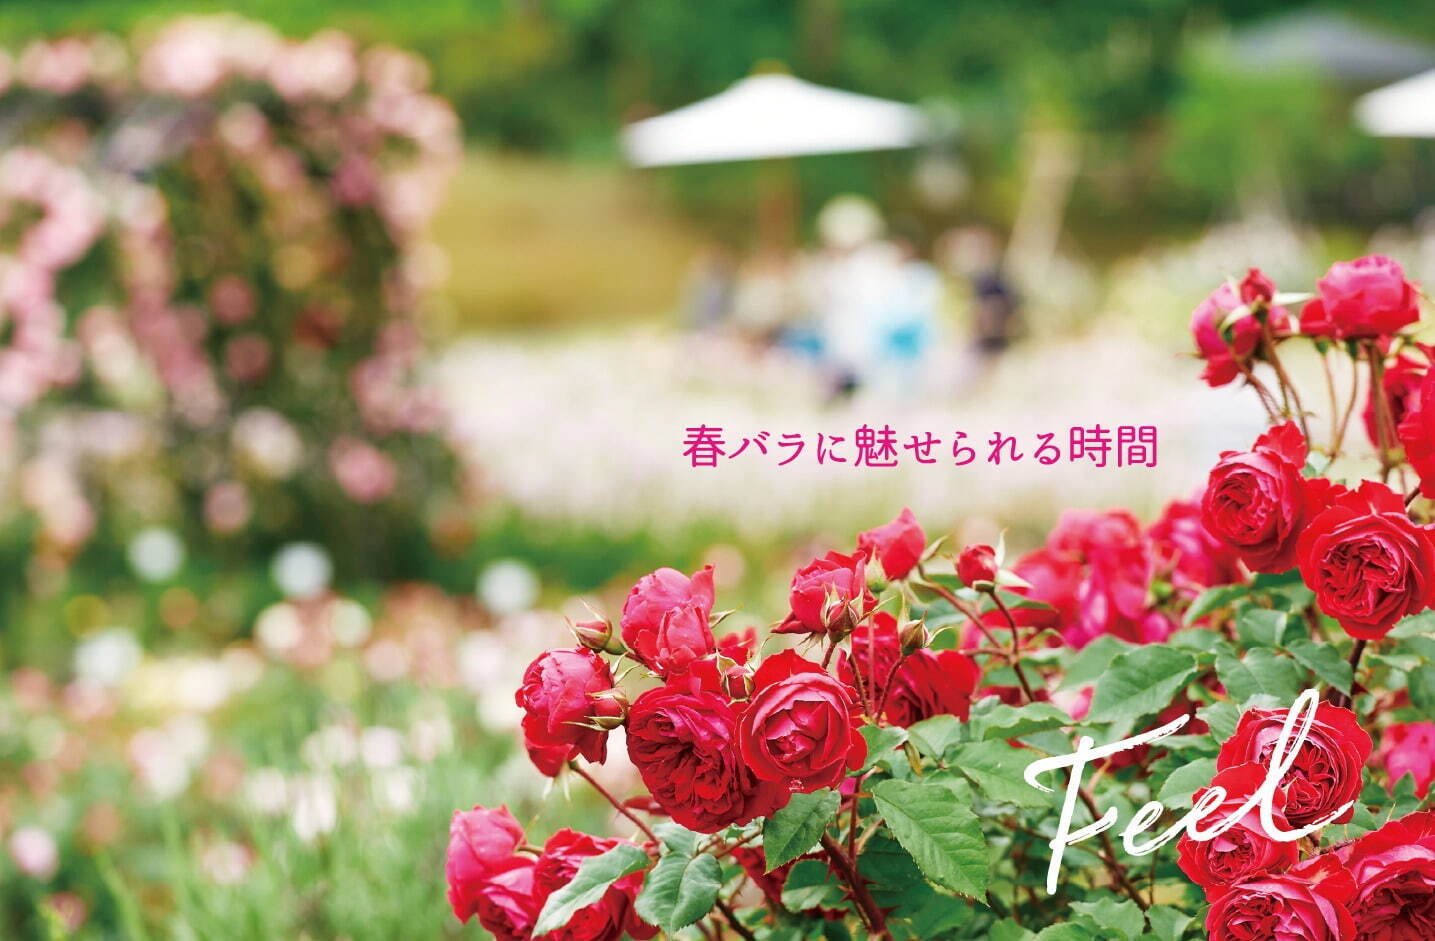 茨城「いばらきフラワーパーク」23年の春バラシーズン、900品種9,000株が園内を彩る｜写真1